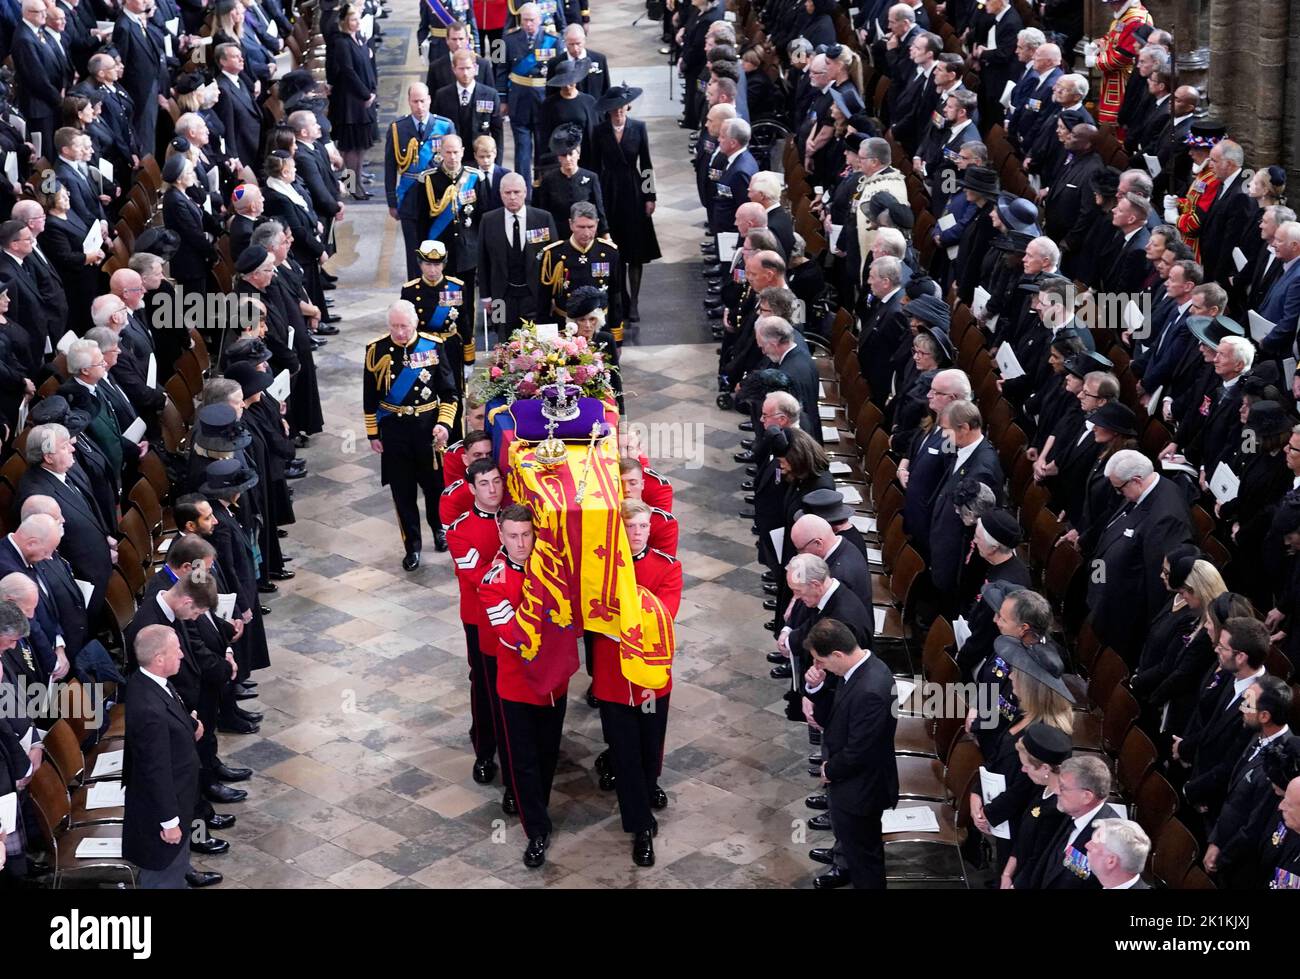 Le roi Charles III, la reine Consort, la princesse royale, le vice-amiral Sir Tim Laurence, le duc d'York, le comte de Wessex, la comtesse de Wessex, le prince de Galles, la princesse de Galles, le prince George, la princesse Charlotte, le duc de Sussex, la duchesse de Sussex, Peter Phillips et le comte de Snowdon suivent derrière le cercueil de la reine Elizabeth II, drapé dans l'étalon royal avec la couronne d'État impériale et l'orbe et le sceptre du souverain, comme il est effectué de l'abbaye de Westminster après son funérailles d'État. Date de la photo: Lundi 19 septembre 2022. Banque D'Images